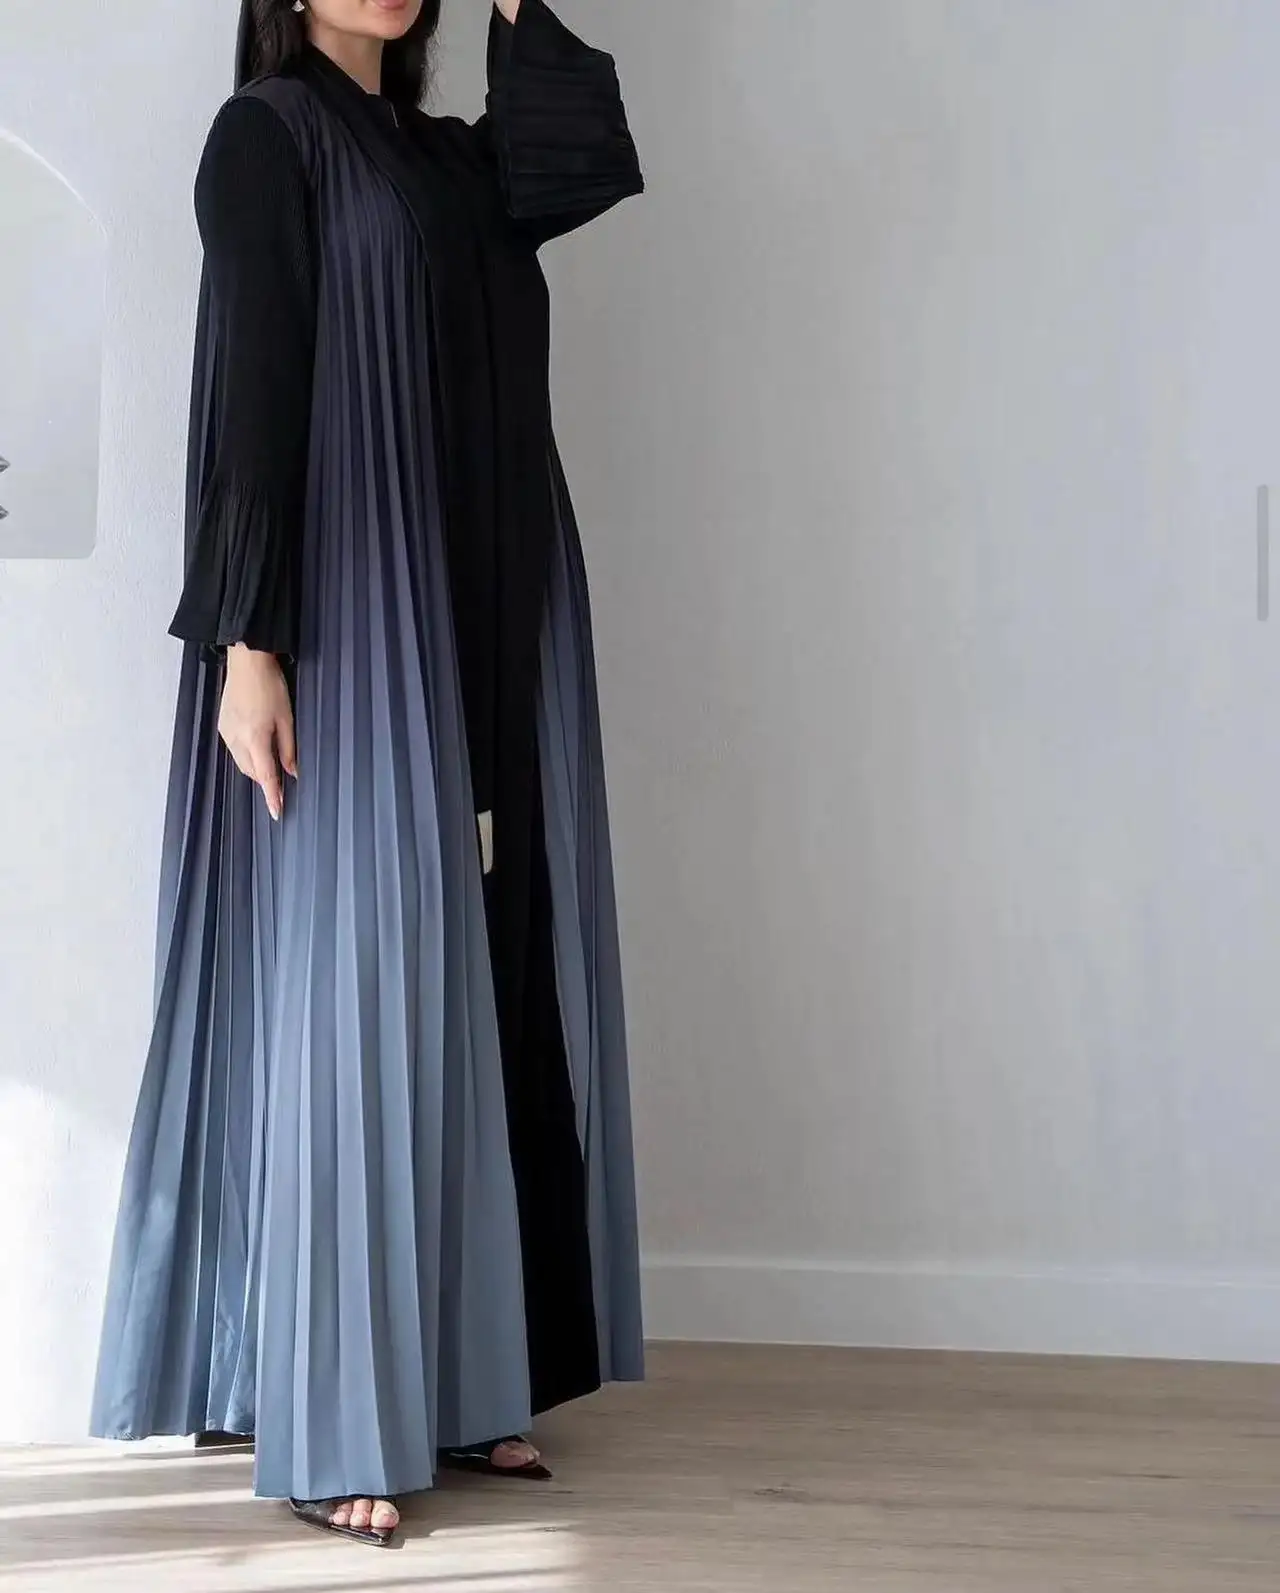 Hifive automne musulman haute qualité dégradé couleur ouvert Cardigan Abaya taille unique plissé grande taille droite femmes robe